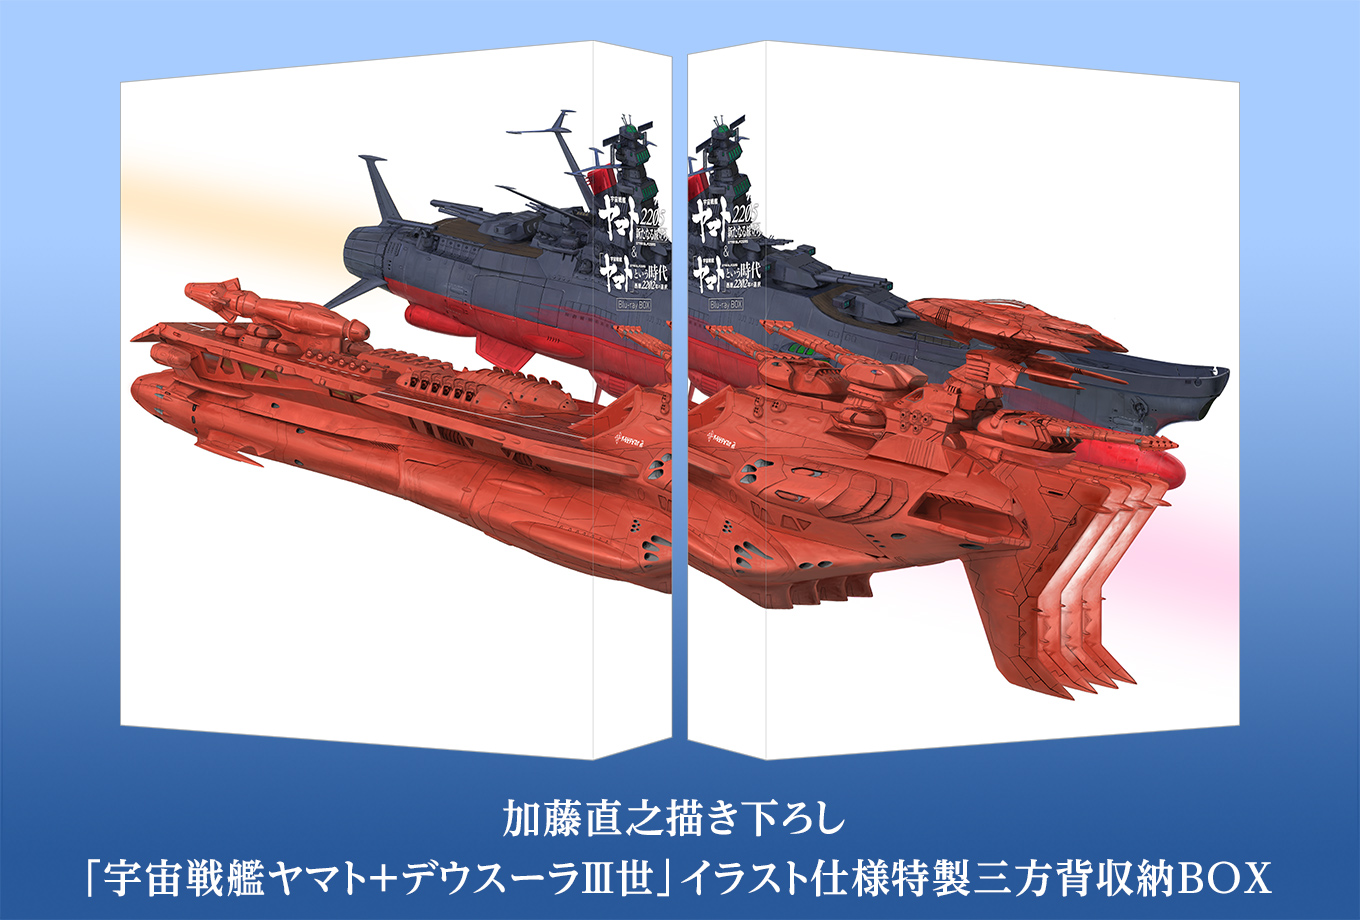 加藤直之描き下ろし「宇宙戦艦ヤマト＋デウスーラⅢ世」イラスト仕様特製三方背収納BOX